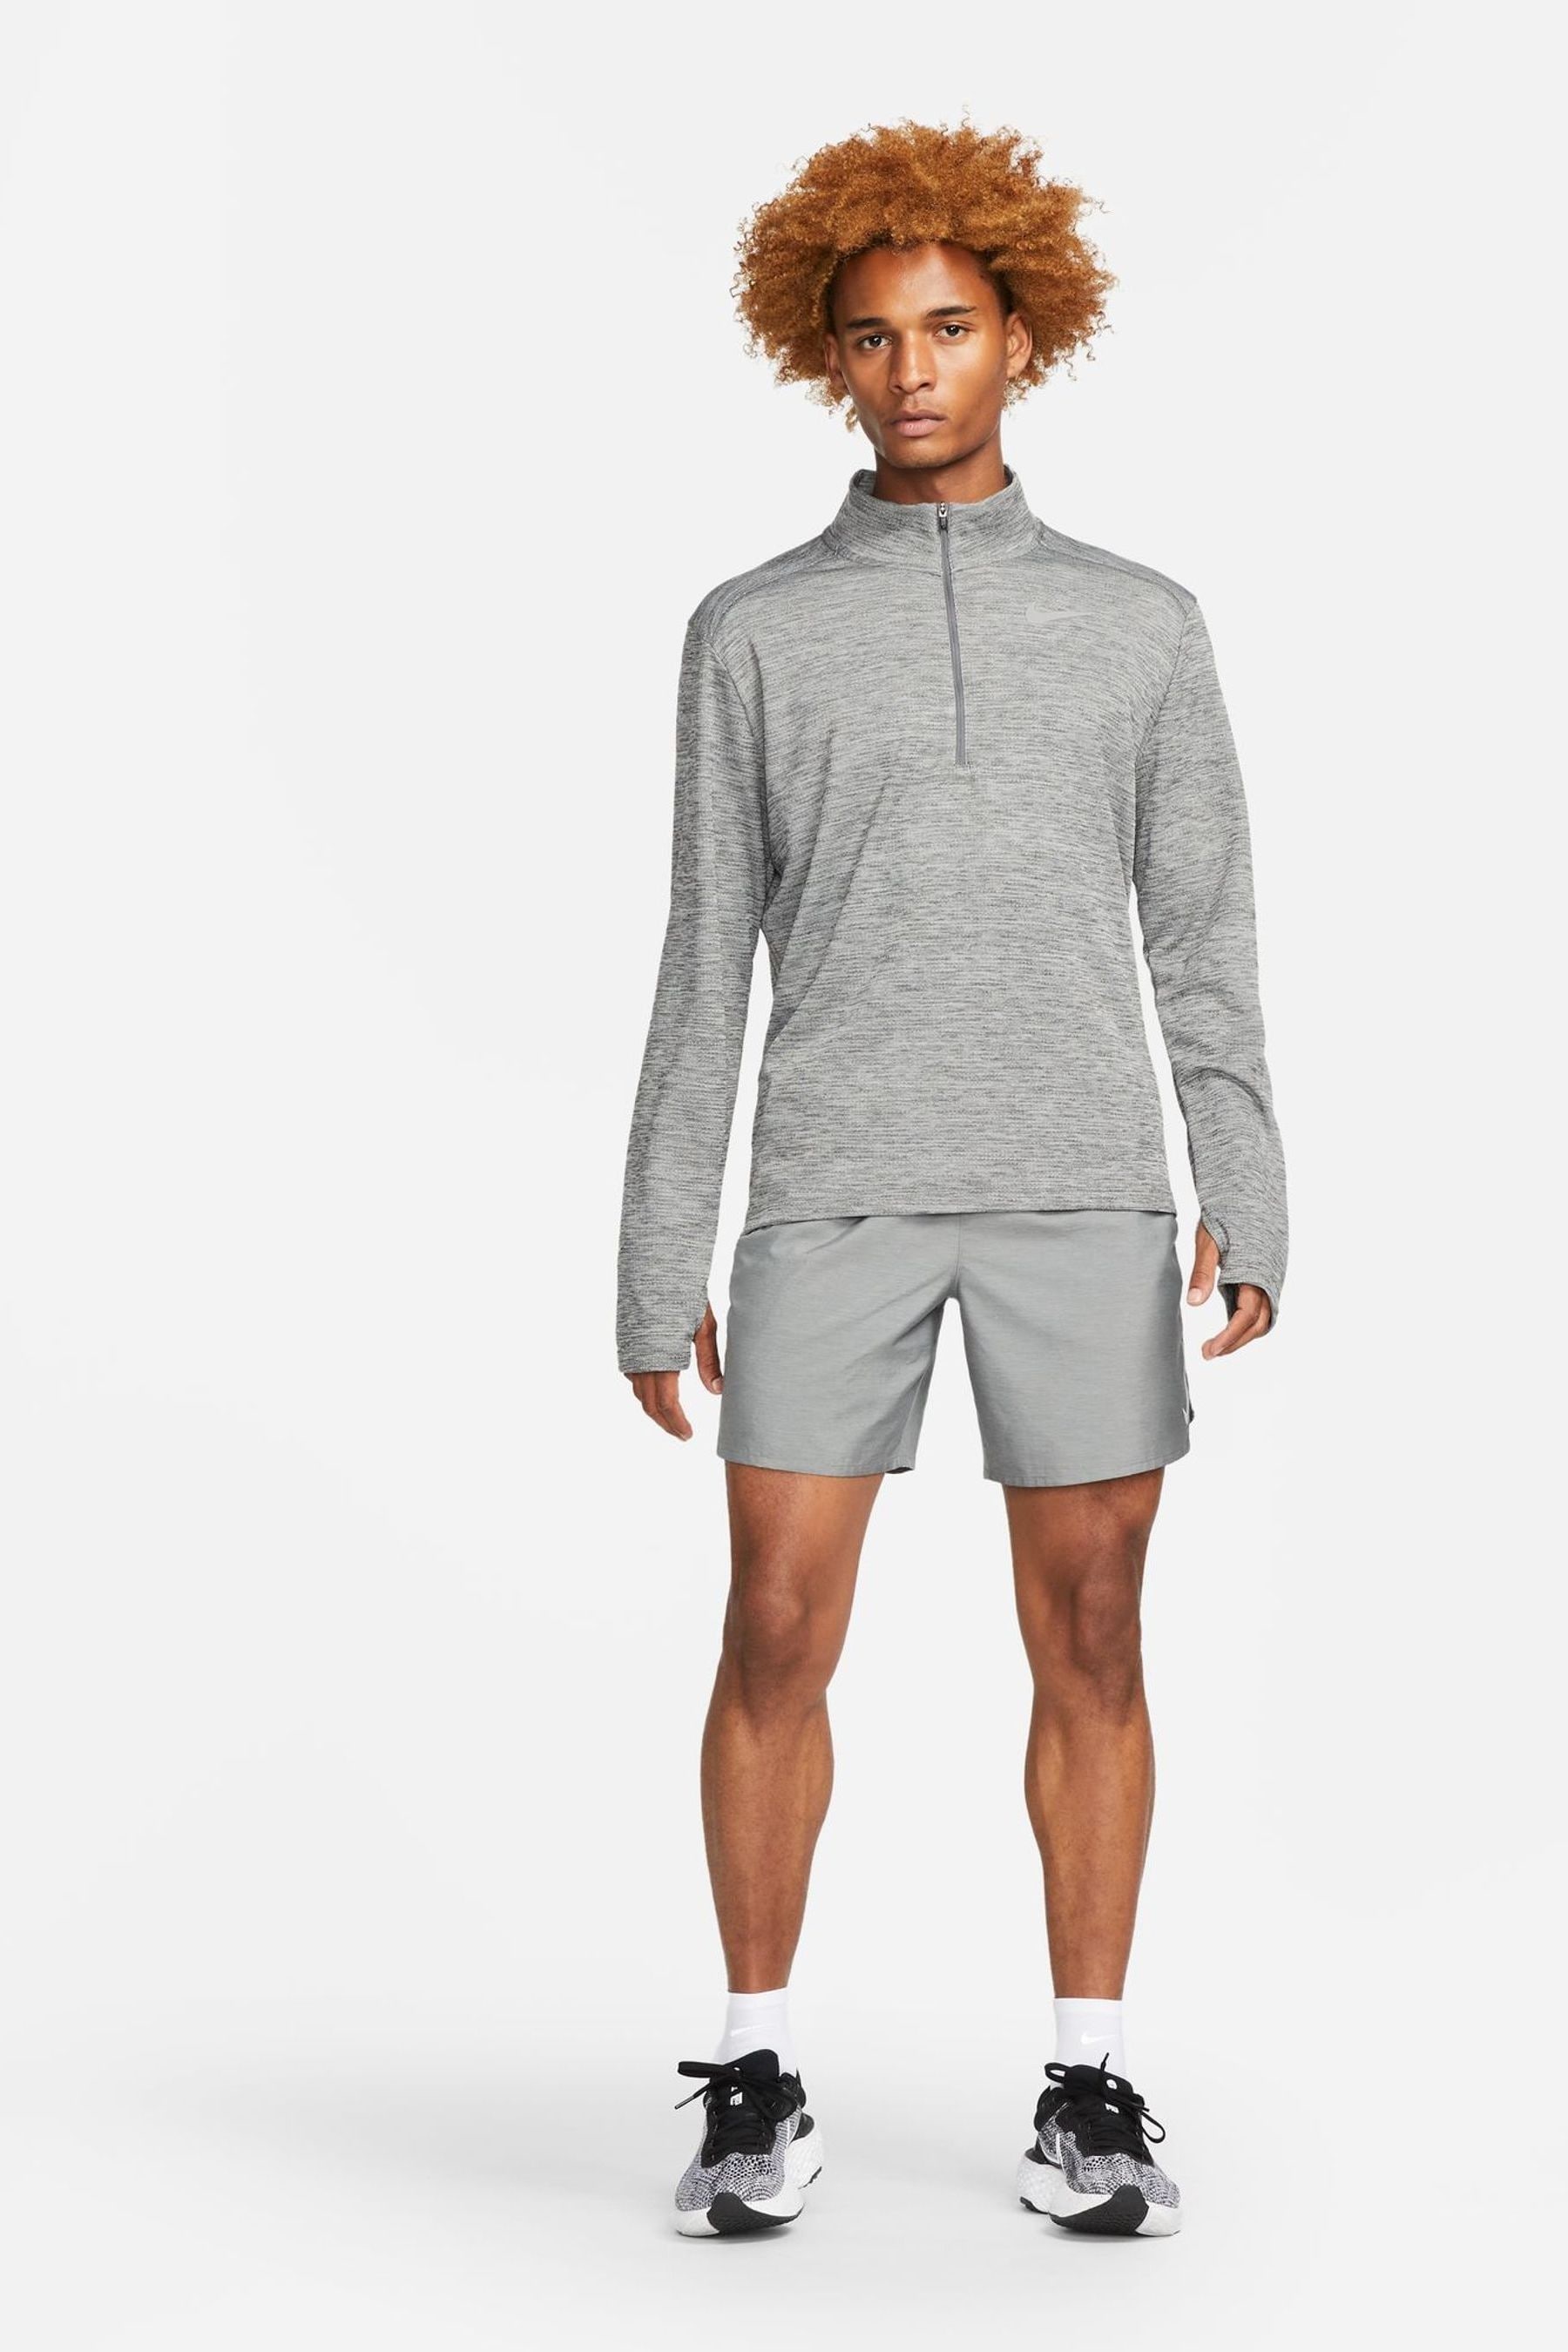 Buy Nike Grey Pacer Half Zip Running Top from the Next UK online shop